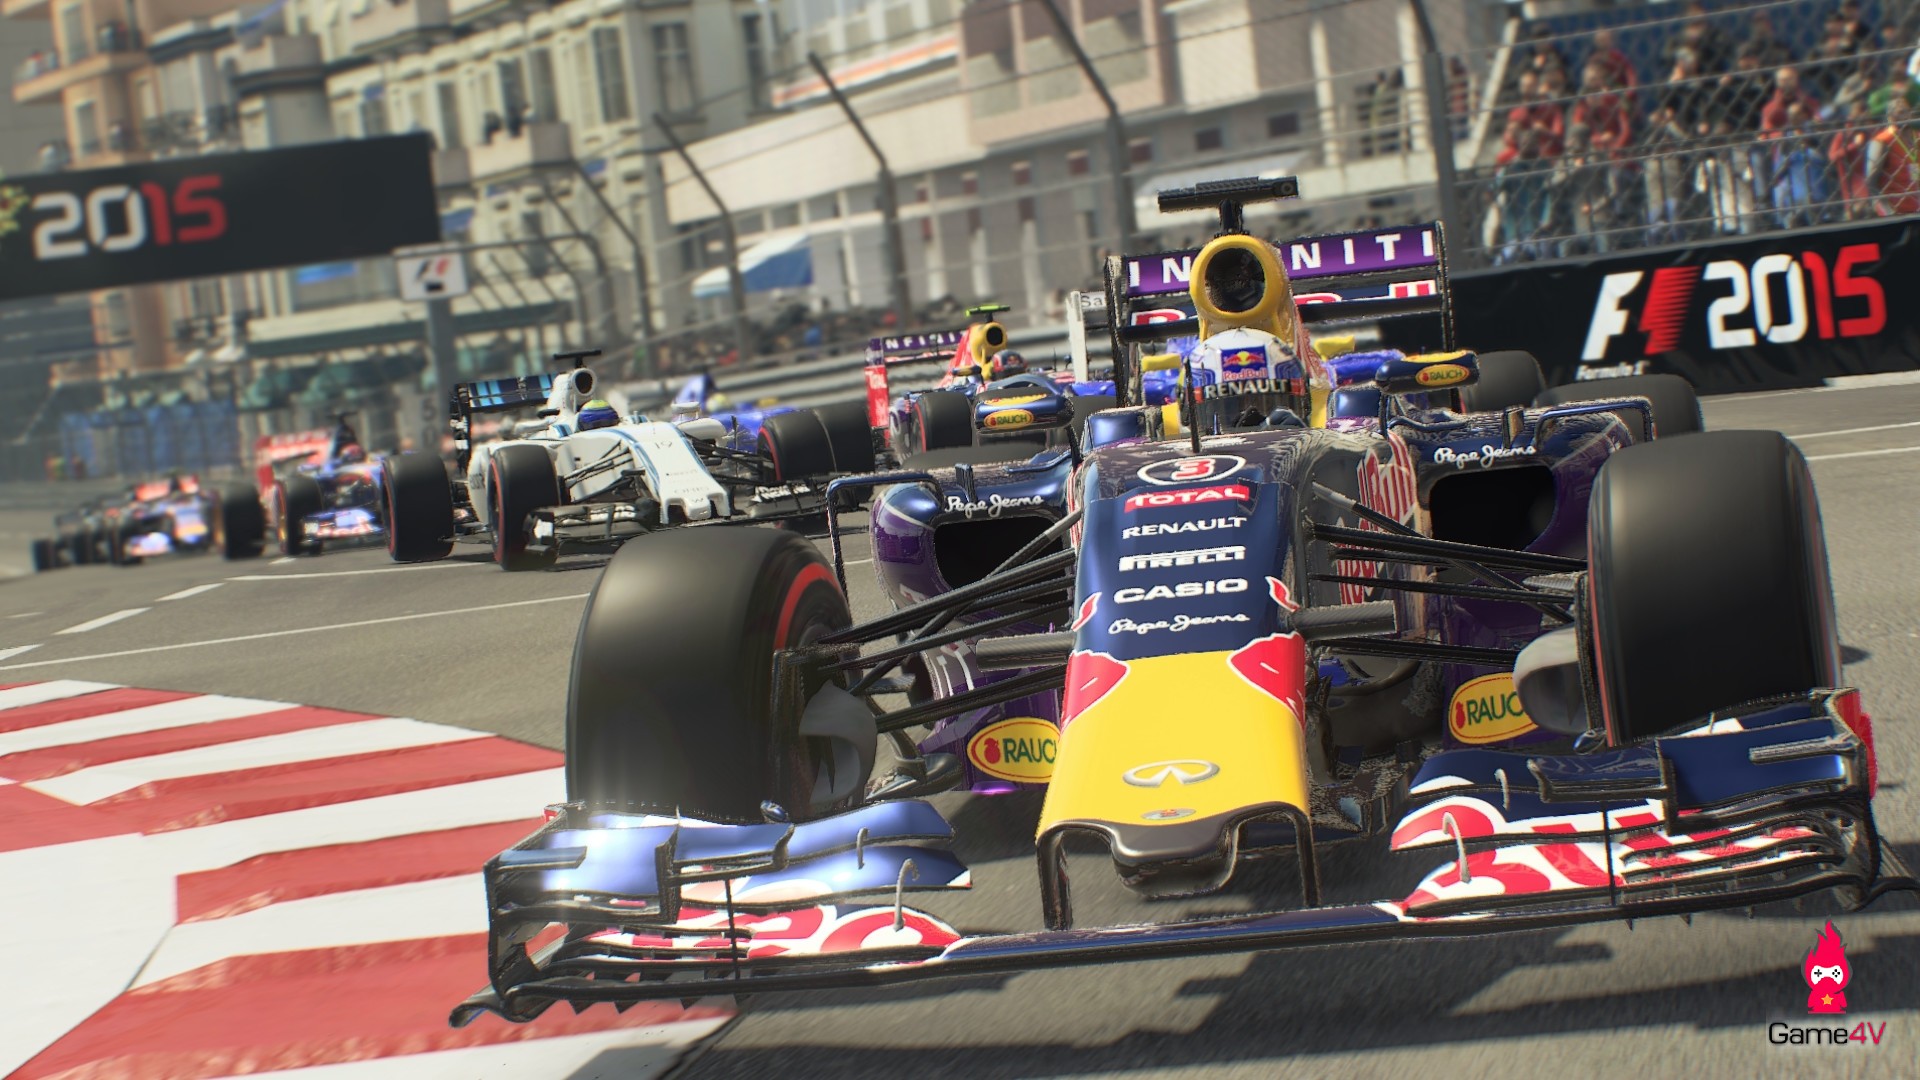 Nhanh tay lấy bản quyền tựa game đua xe F1 2015 trị giá 40$ hoàn toàn miễn phí